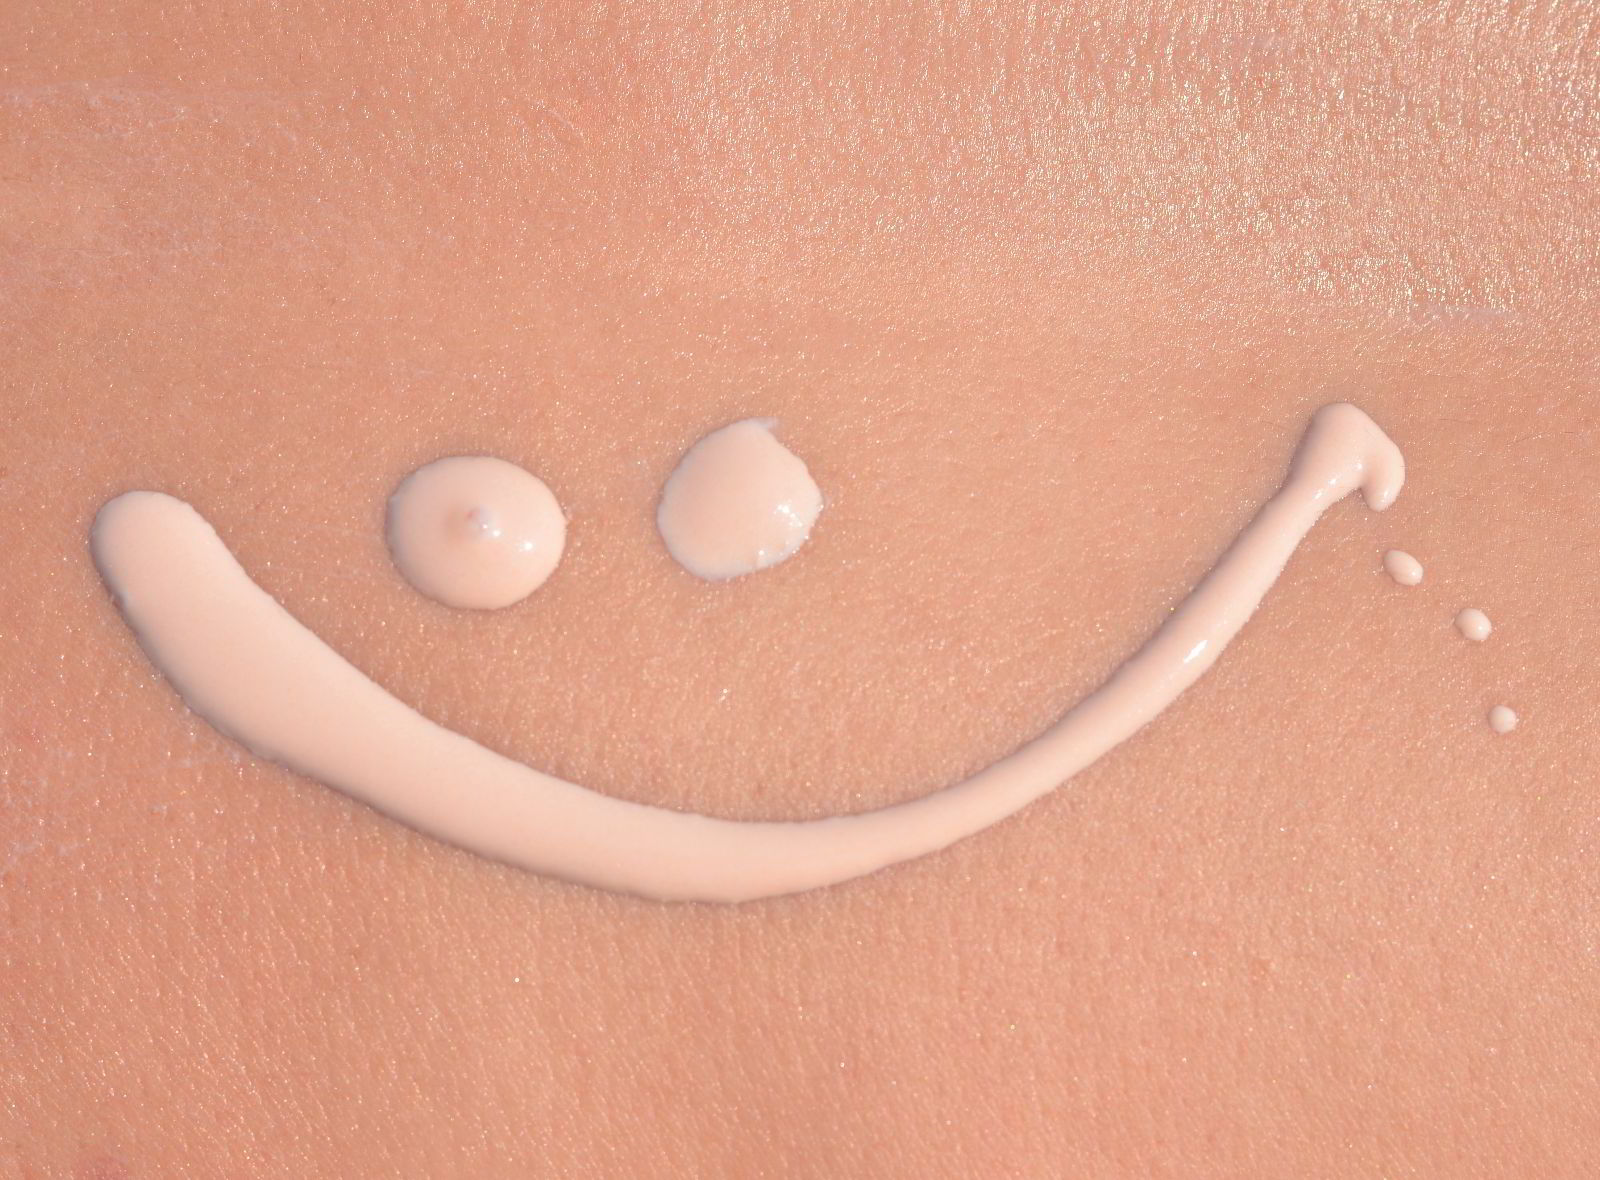 Imagen de piel con crema solar dibujando una sonrisa